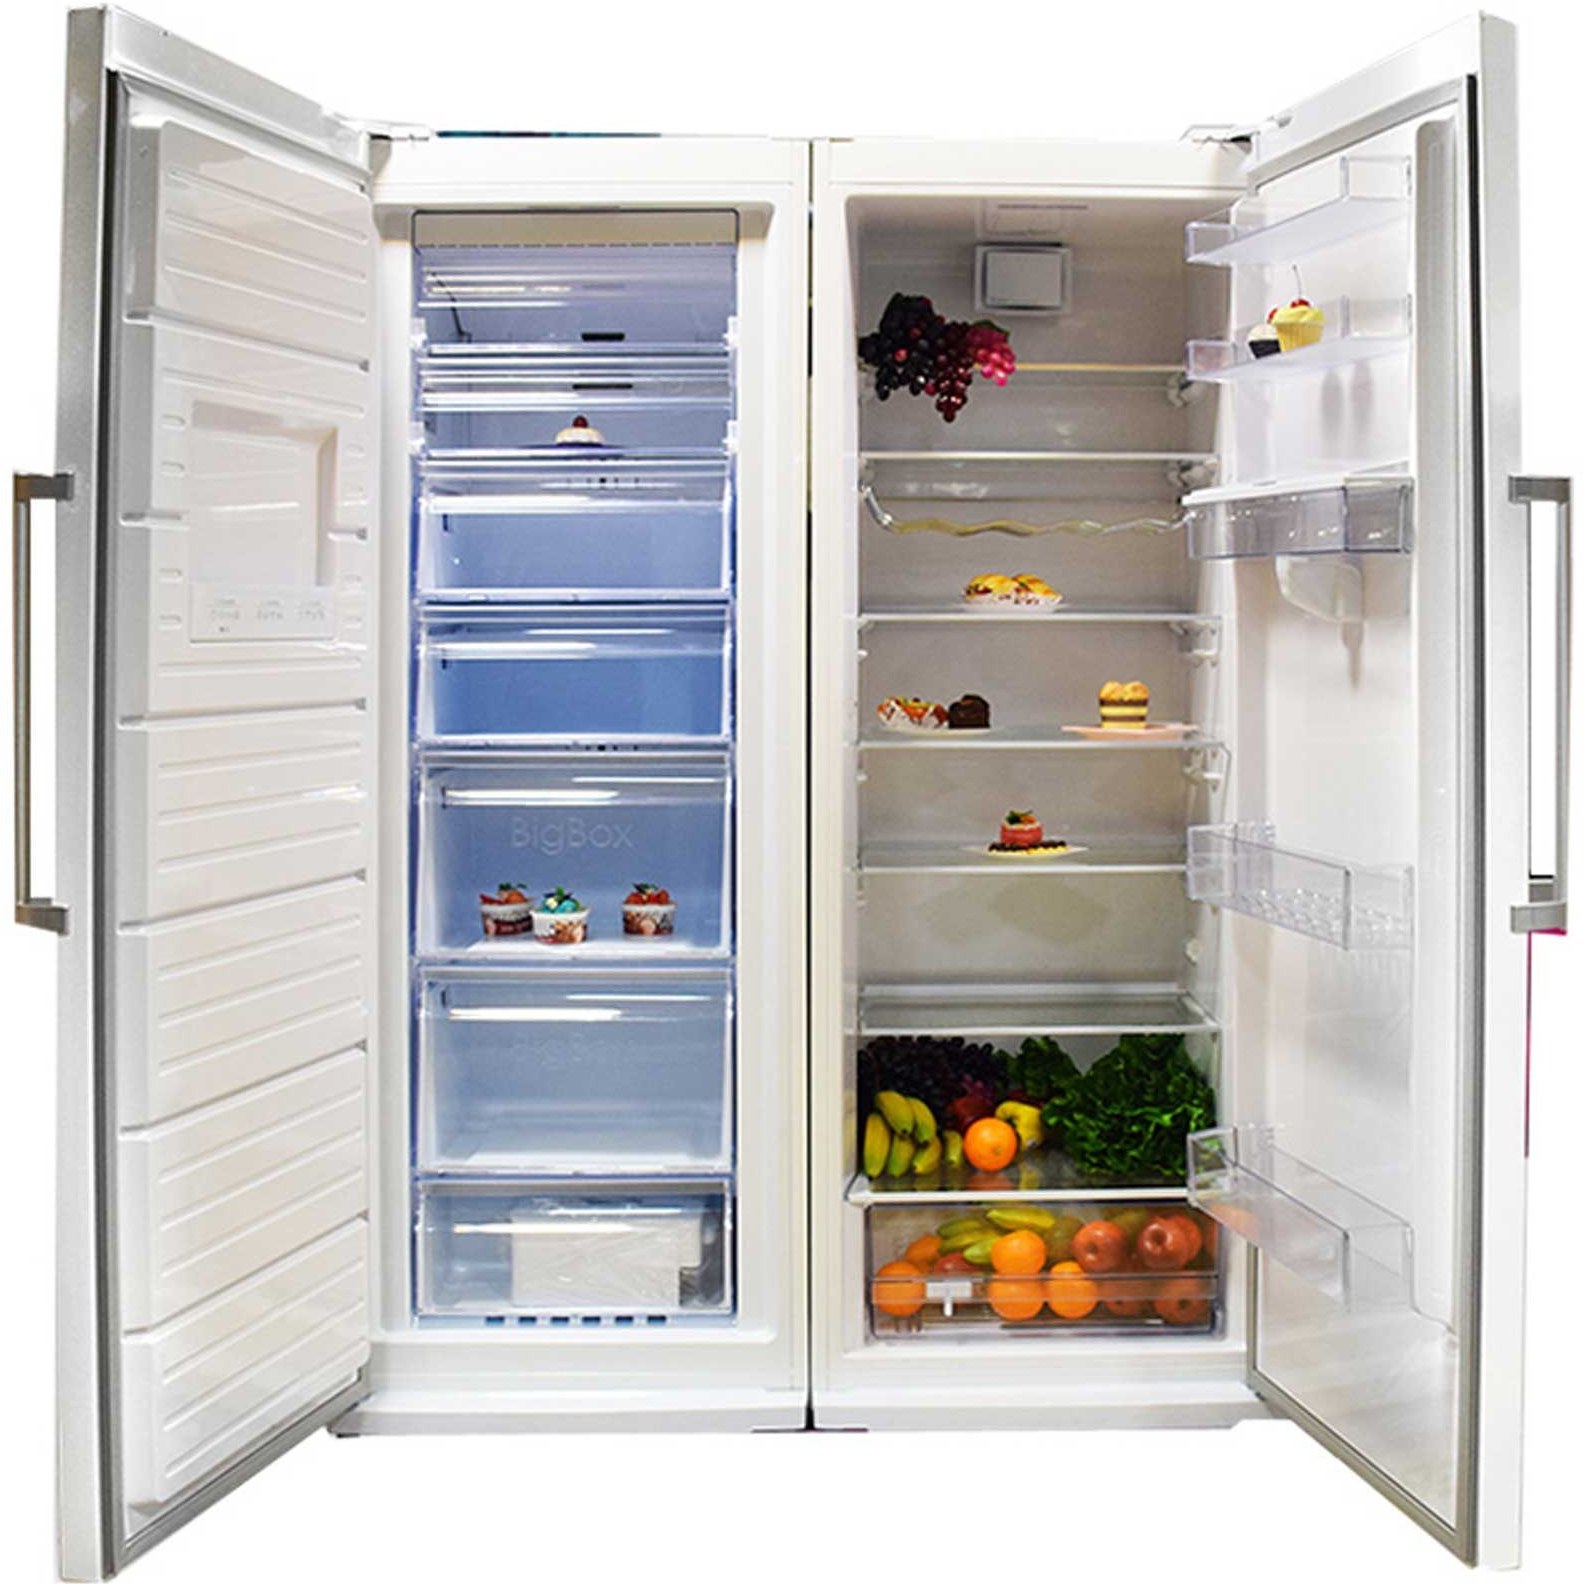 خرید و قیمت یخچال فریزر دوقلو امرسان 16 فوت مدل دیاموند _ RH16D / FN16D اEmersun 16 Foot Diamond RH16D-FN16D twin freezer refrigerator | ترب